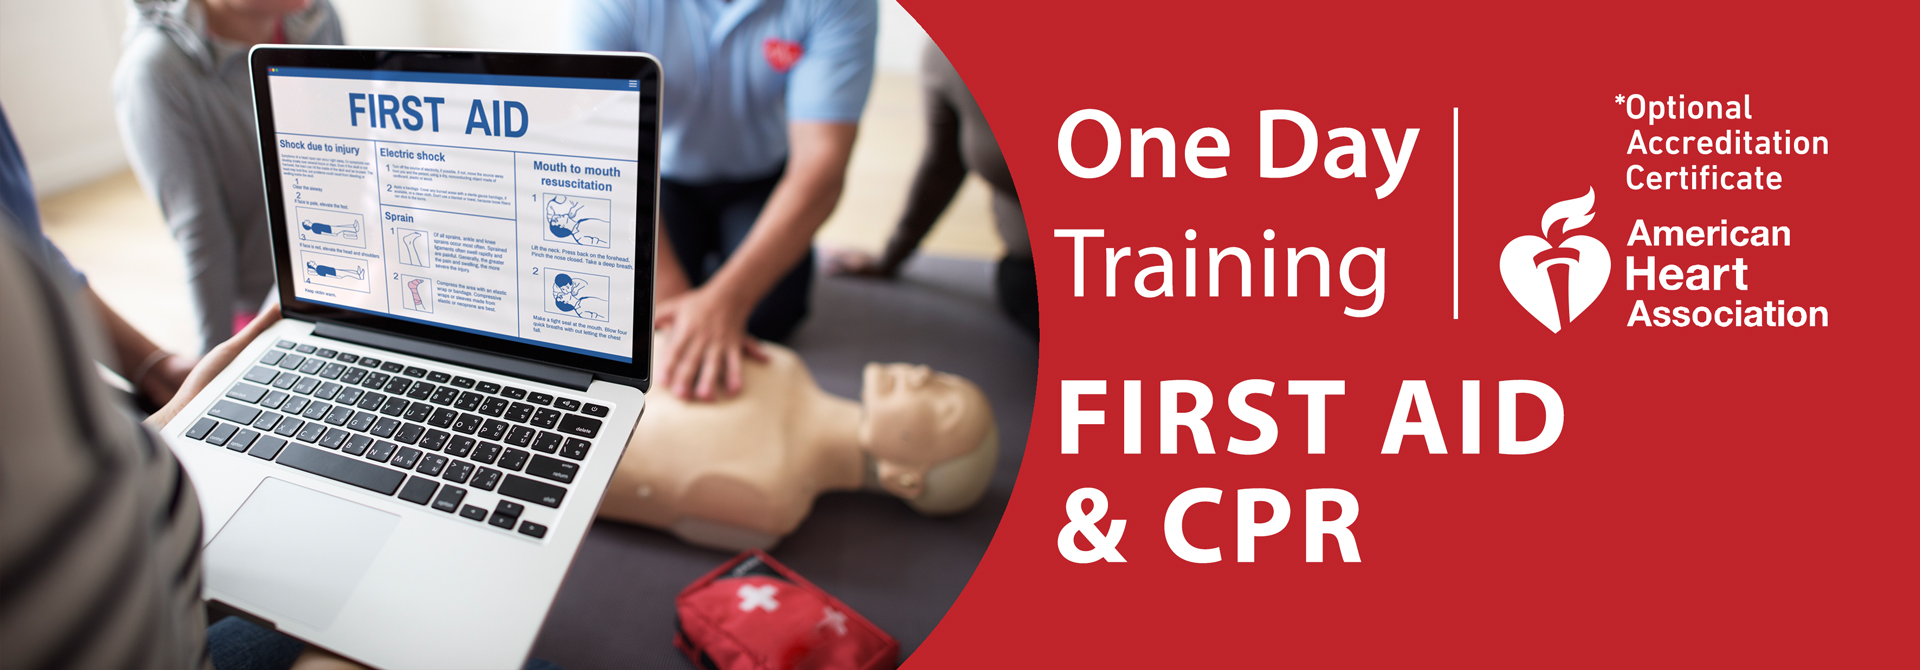 One Day Training FIRST AID & CPR الاسعافات الأولية والانعاش القلبي